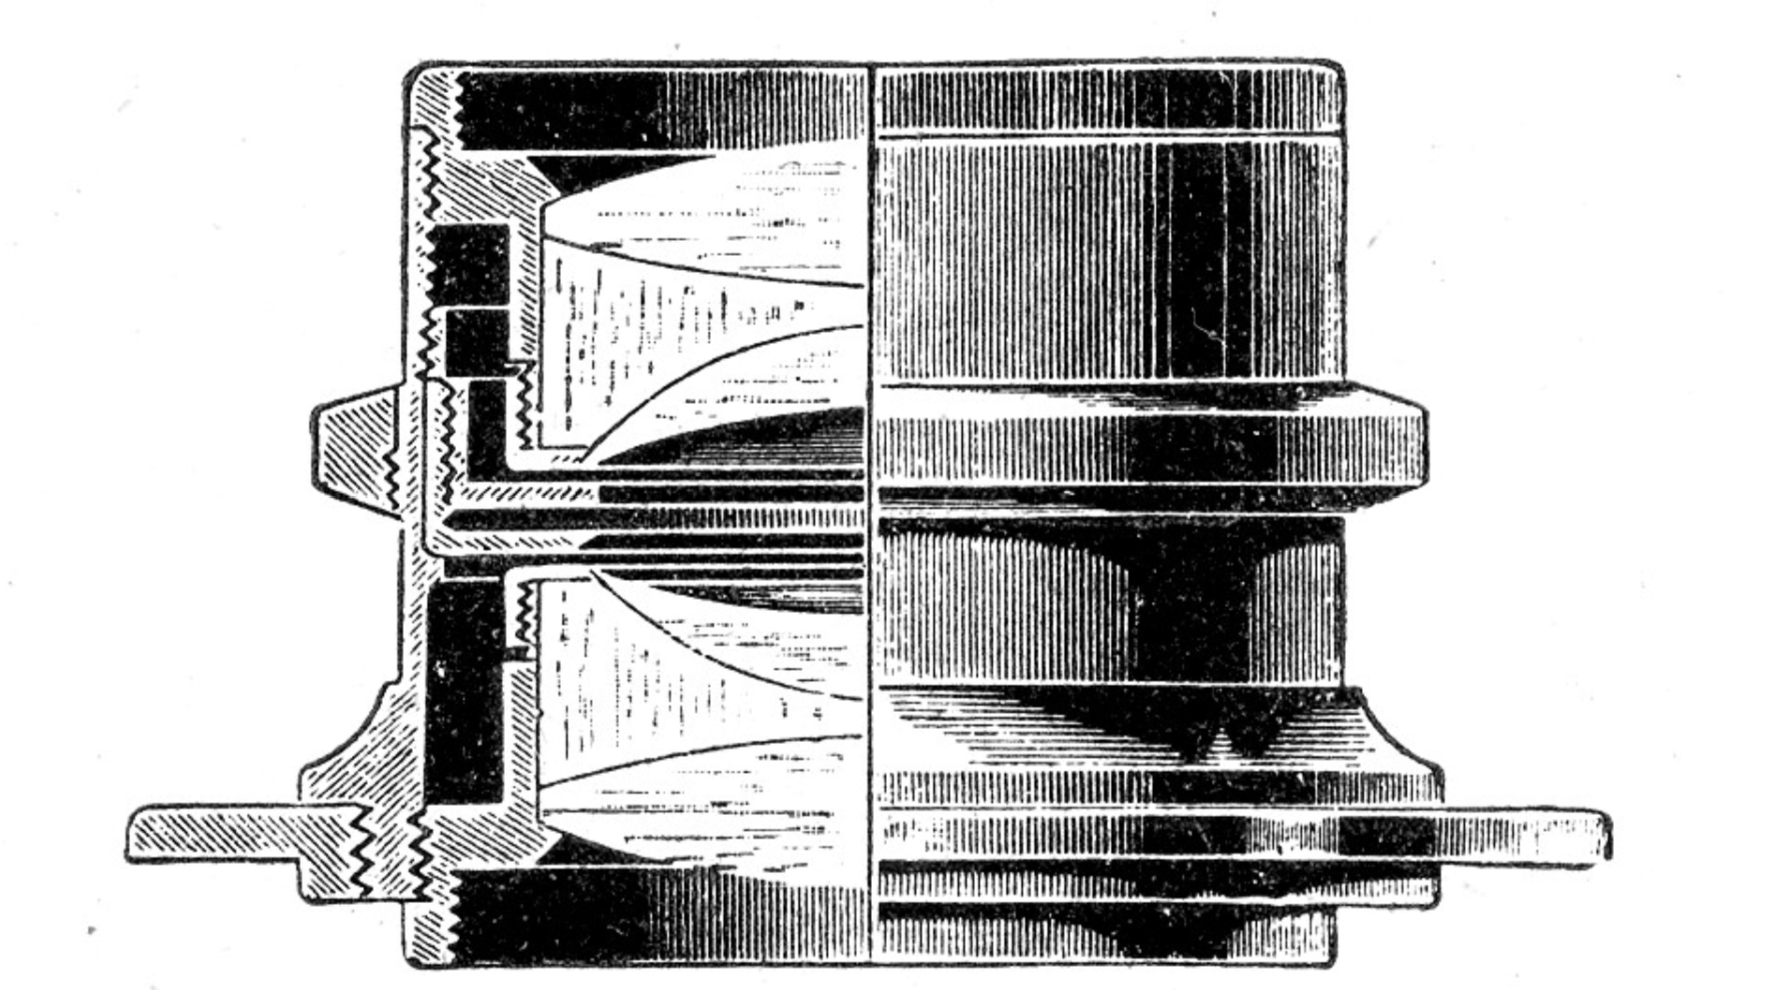 Diagrama esquemático de la lente "Dagor".